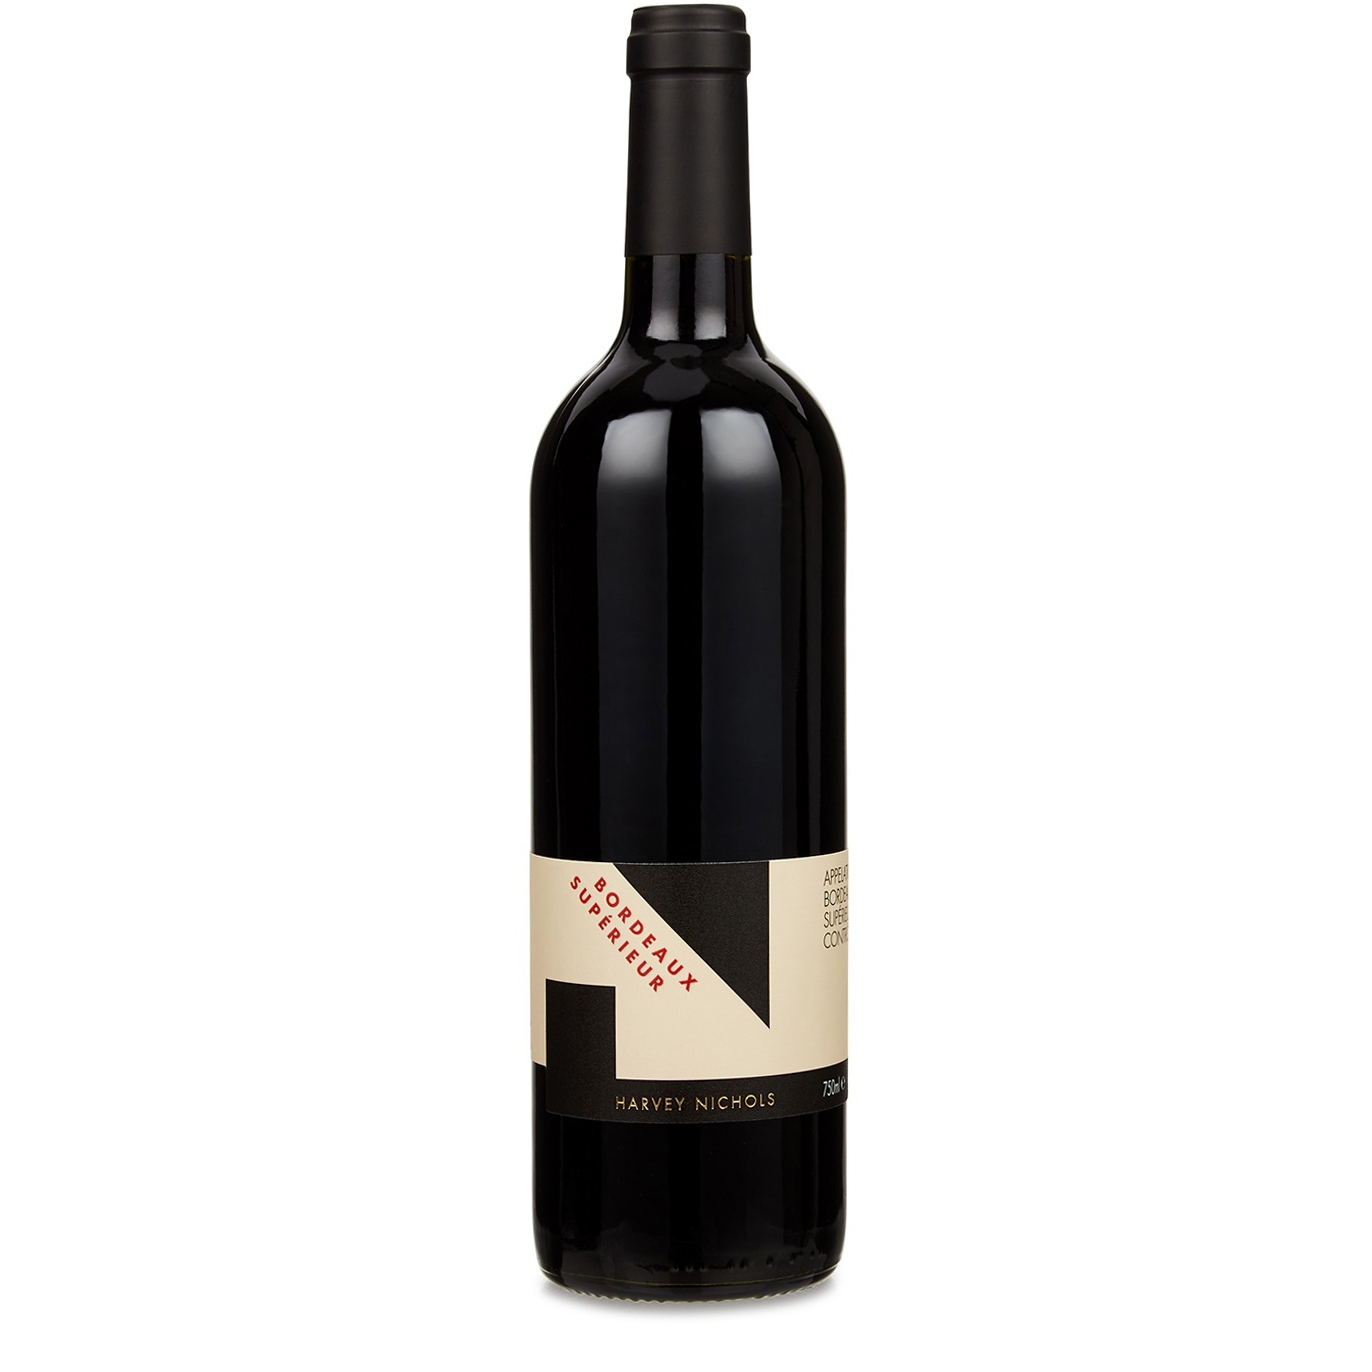 Harvey Nichols Bordeaux Supérieur 2019 Red Wine